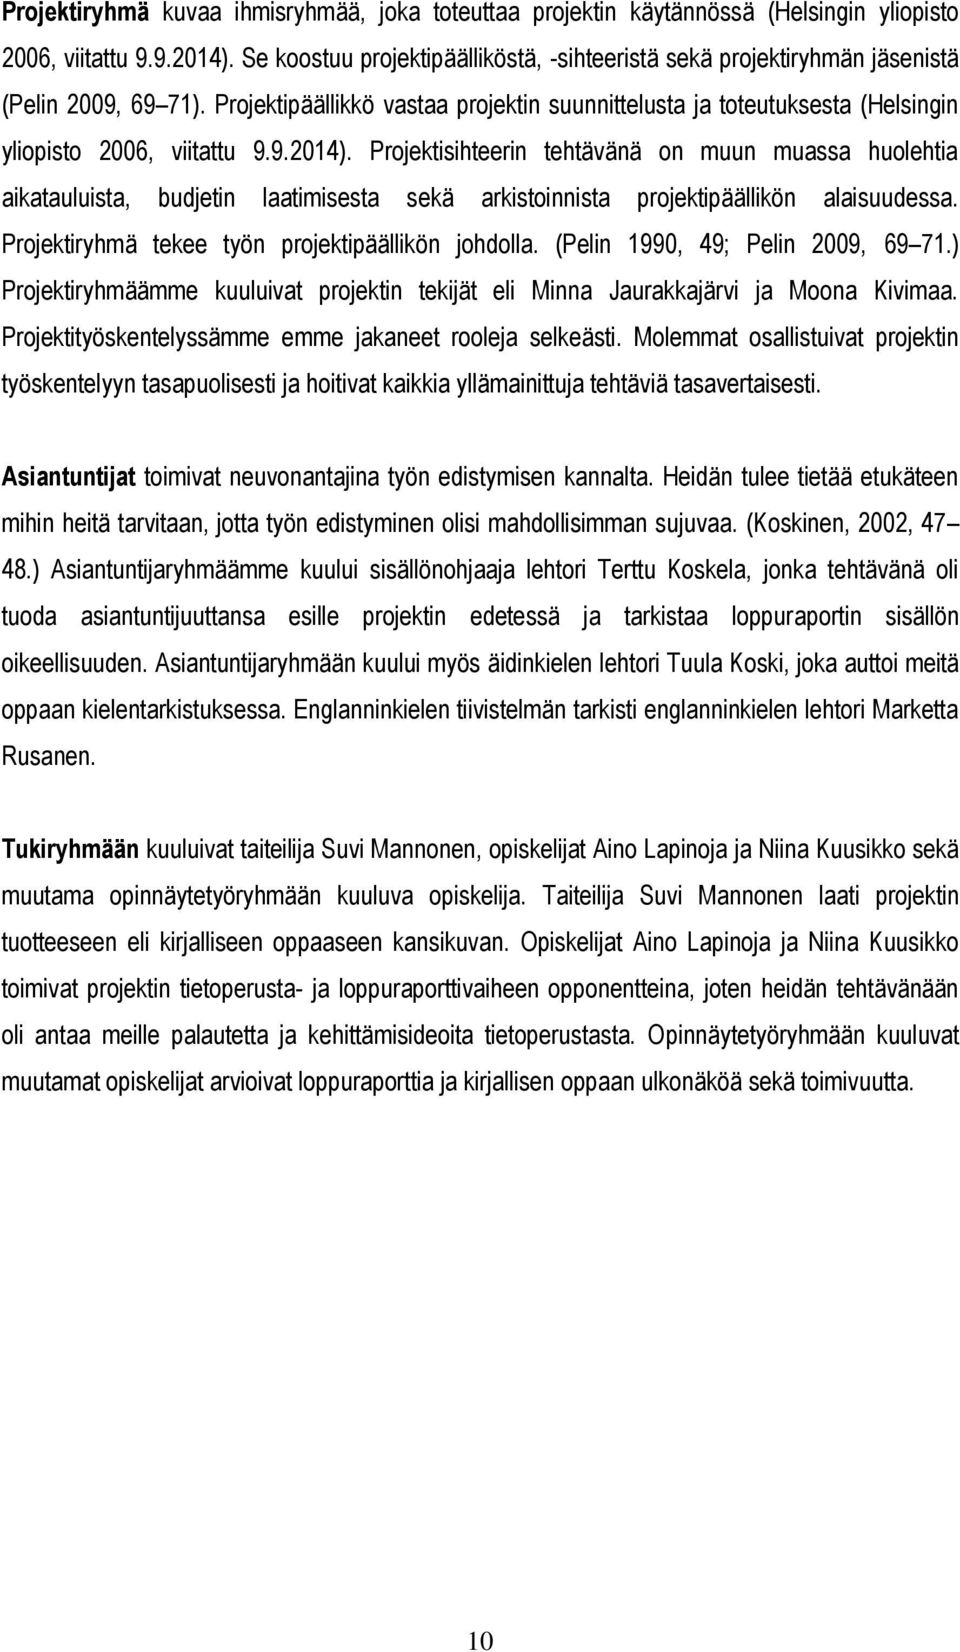 Projektipäällikkö vastaa projektin suunnittelusta ja toteutuksesta (Helsingin yliopisto 2006, viitattu 9.9.2014).